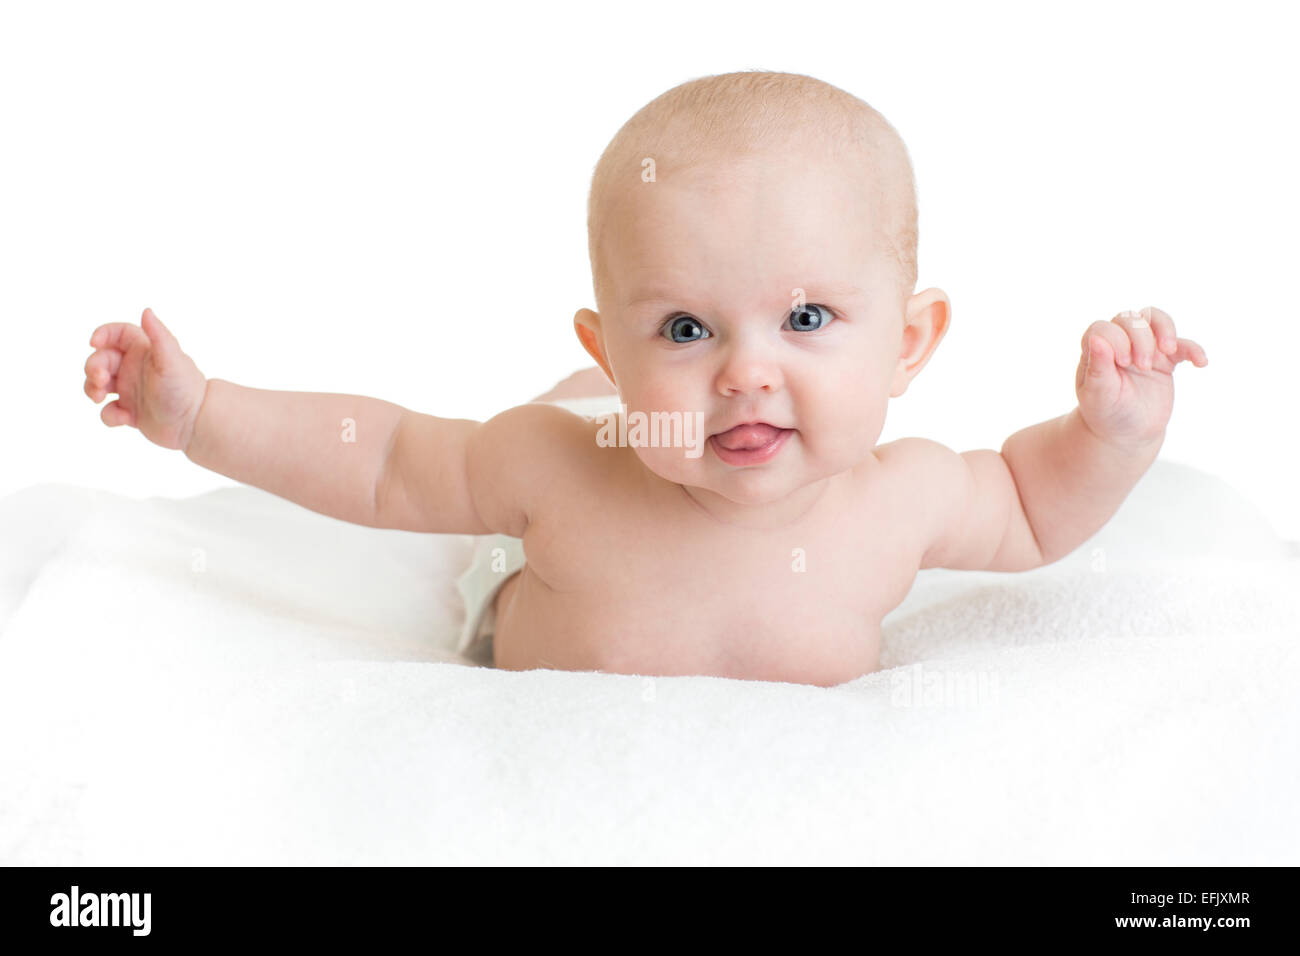 Lindo bebé sano tumbado en la toalla blanca con las manos arriba Foto de stock